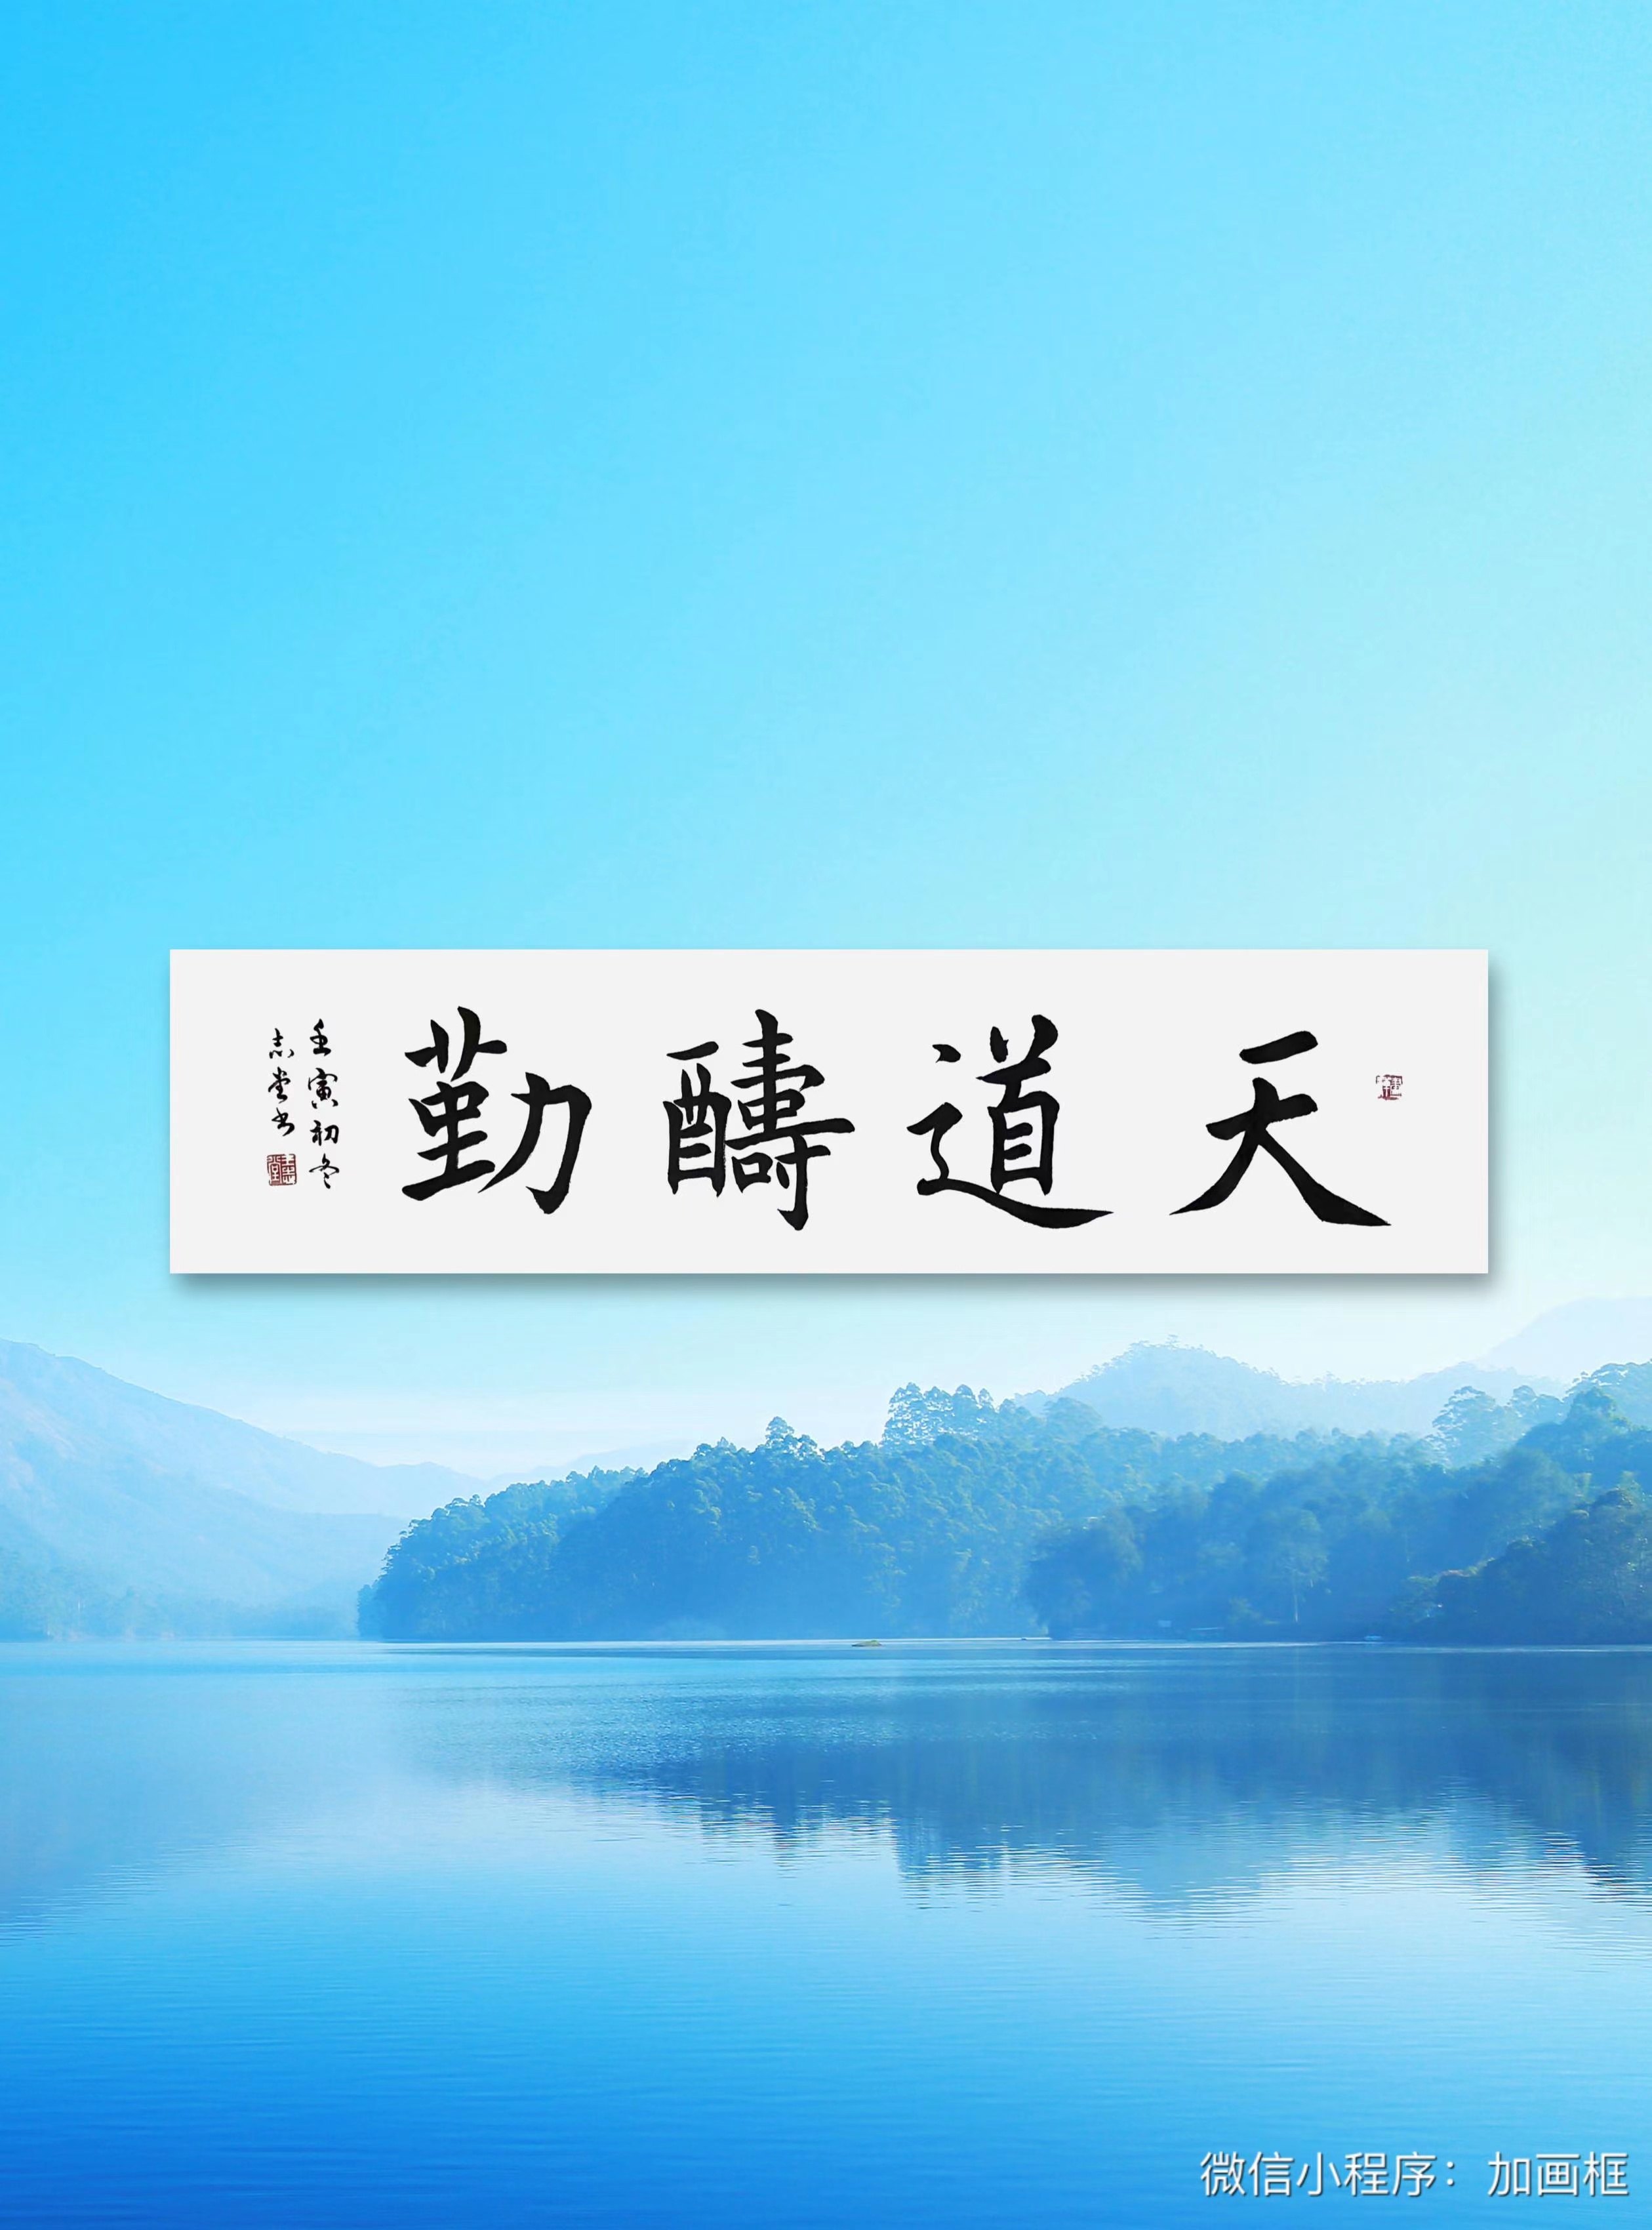 中国大众文化学会名人书画艺术发展委员会——王志堂